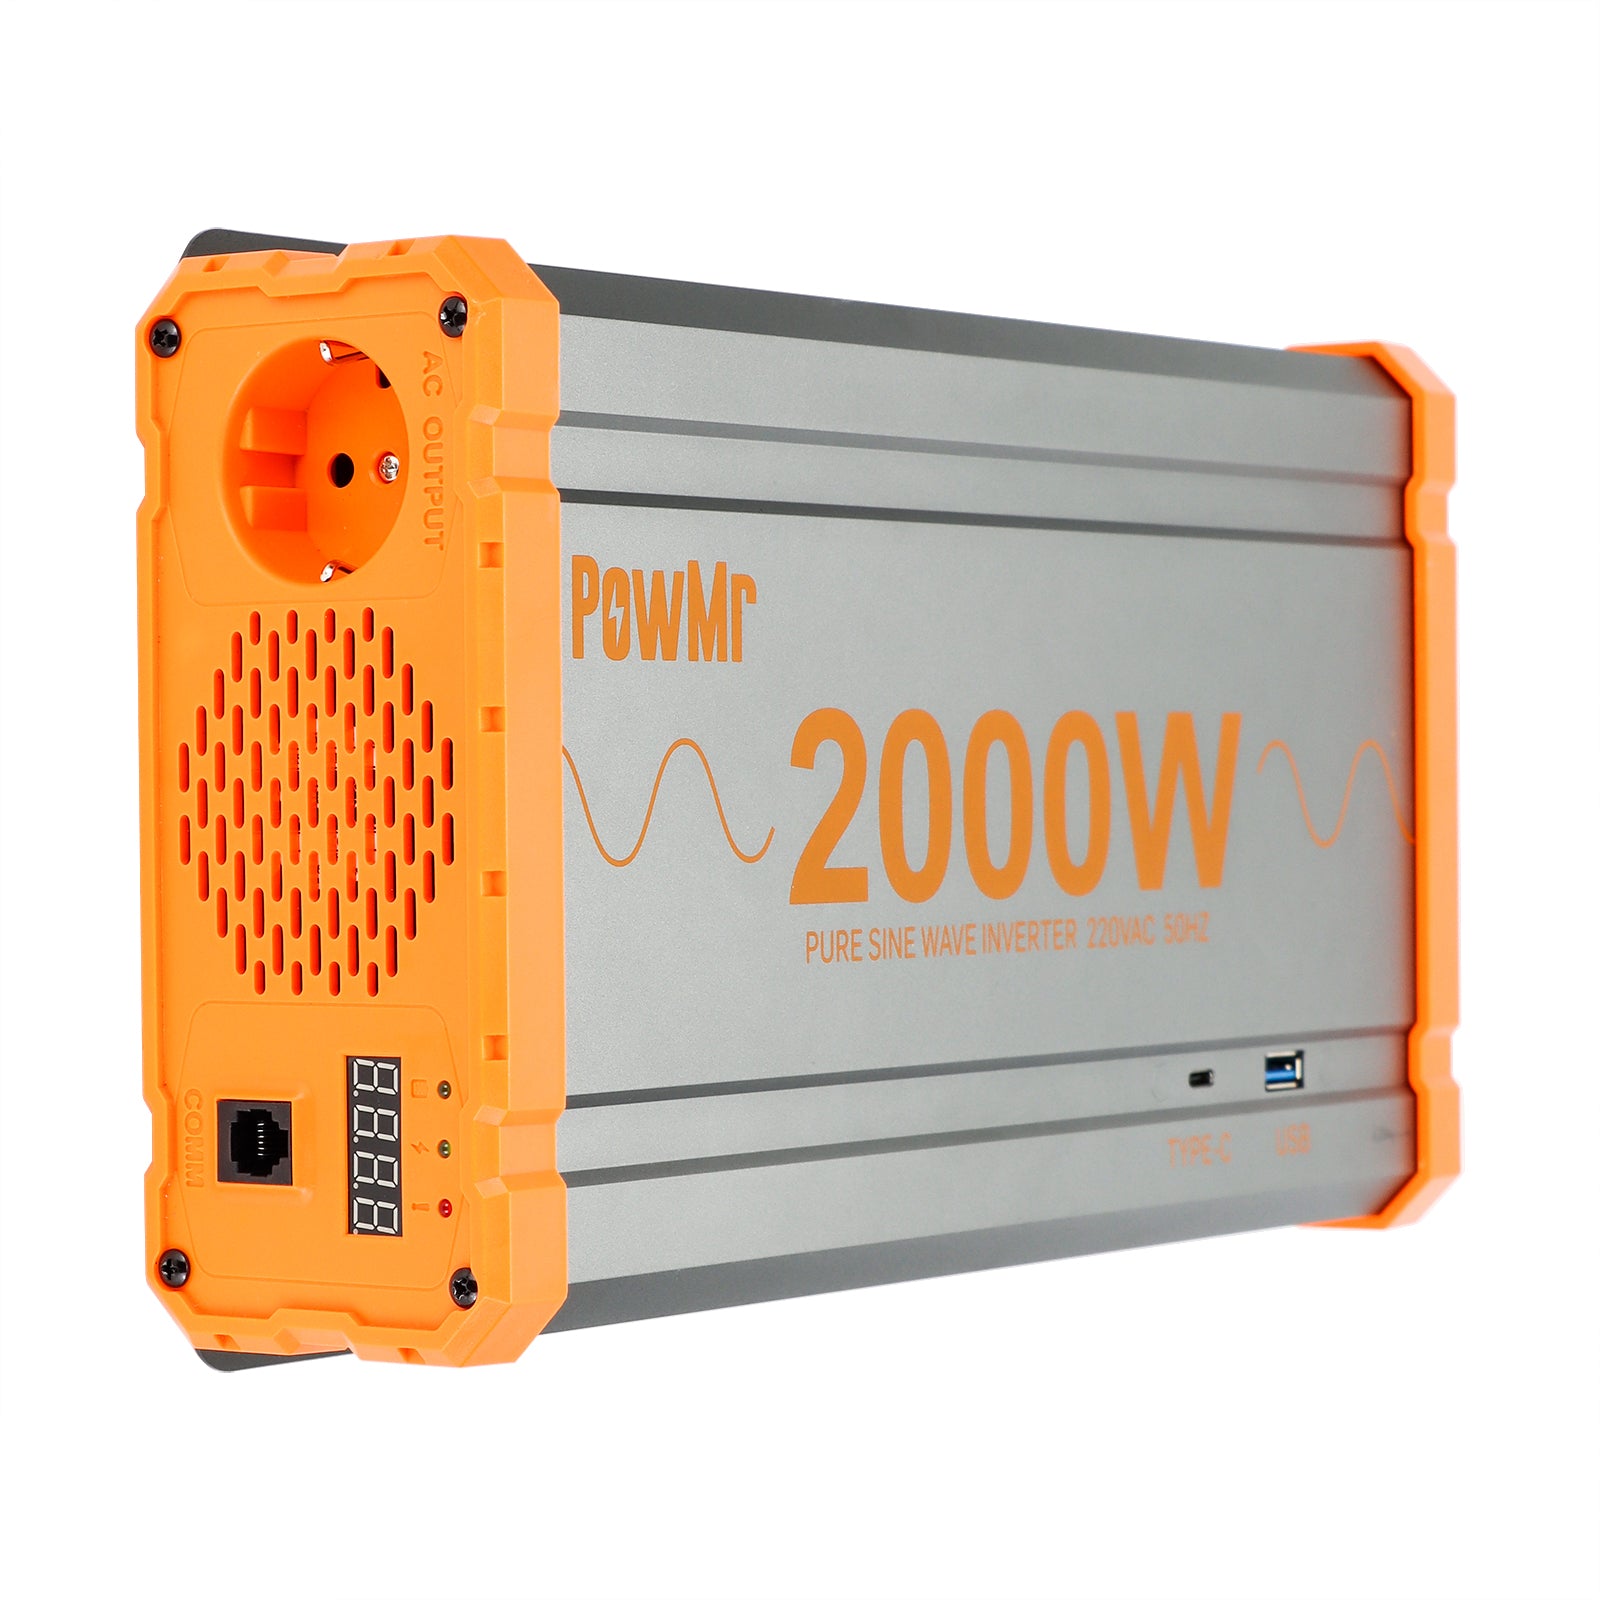 2000W DC 24V AC 220V EU Power Inverter – PowMr